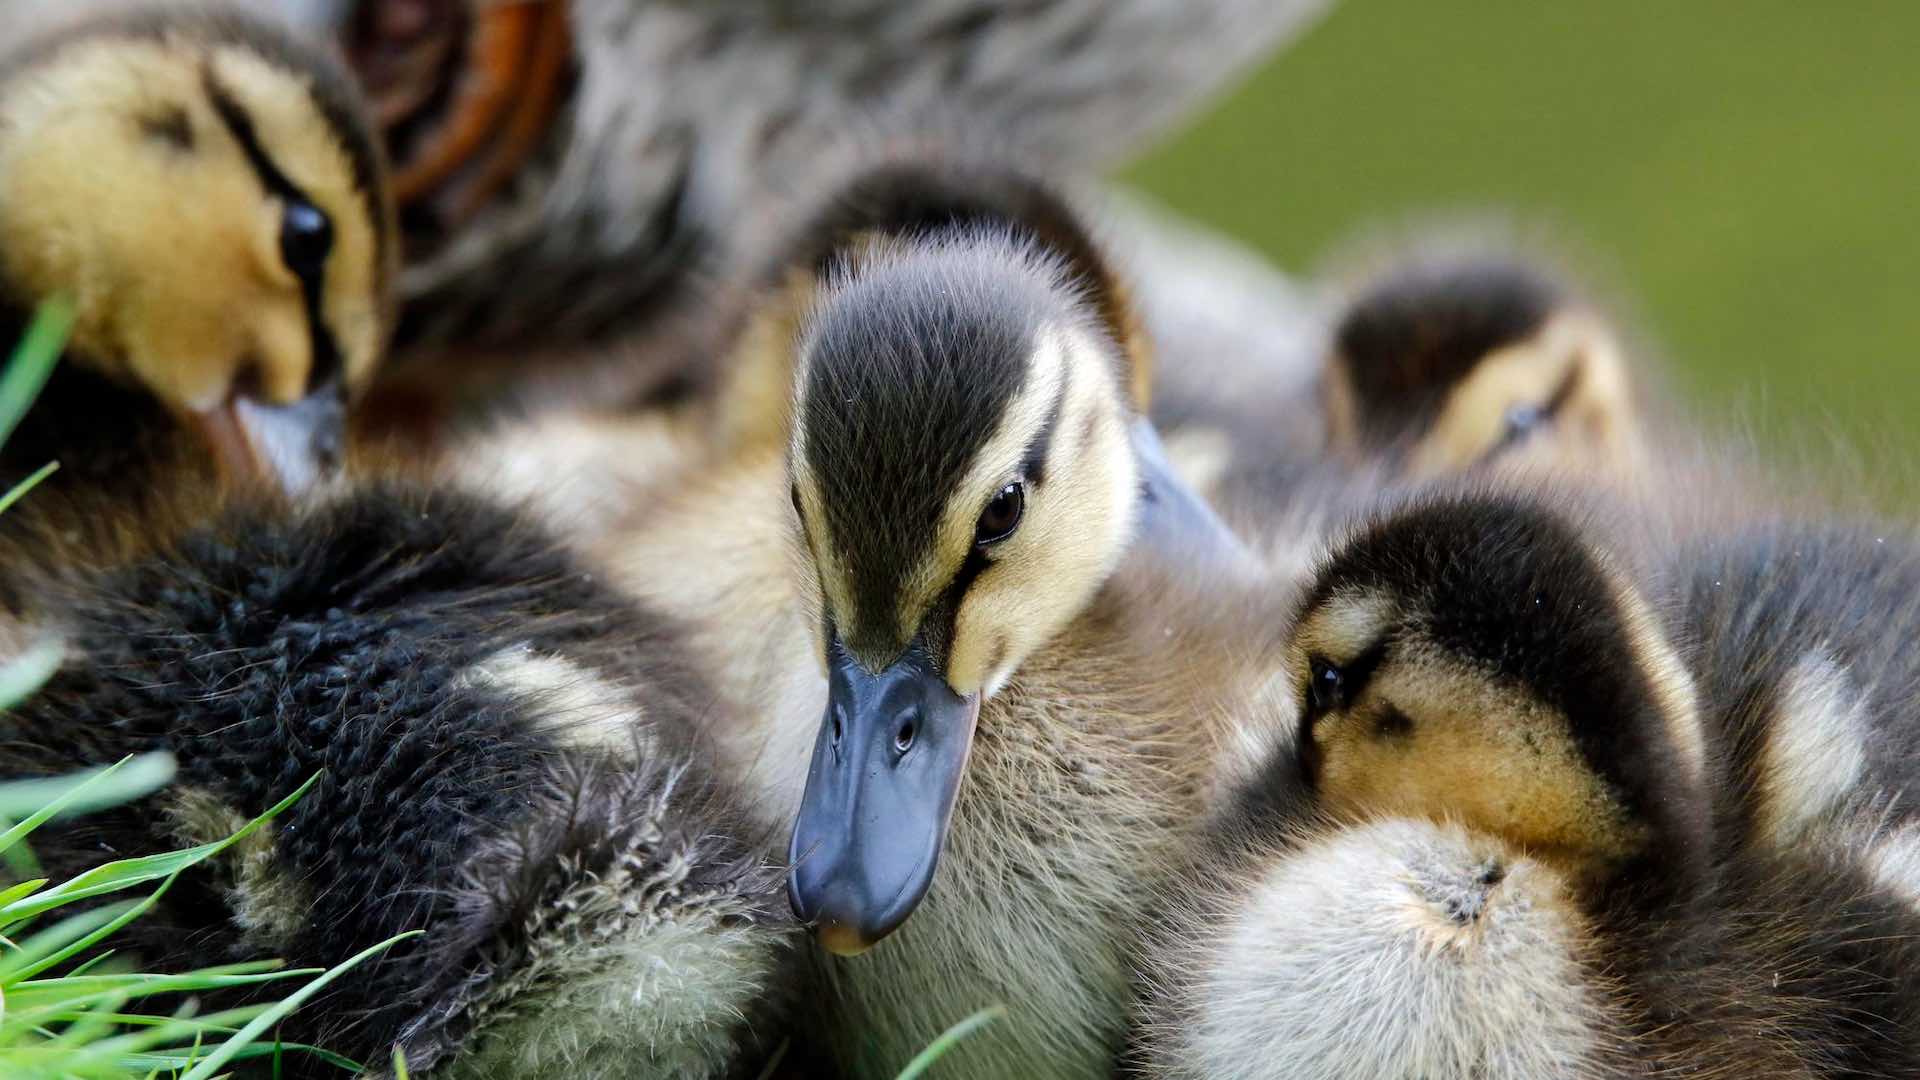 Fransa'da 64 milyon ördeğe ulusal lezzeti korumak için aşı yapılacak